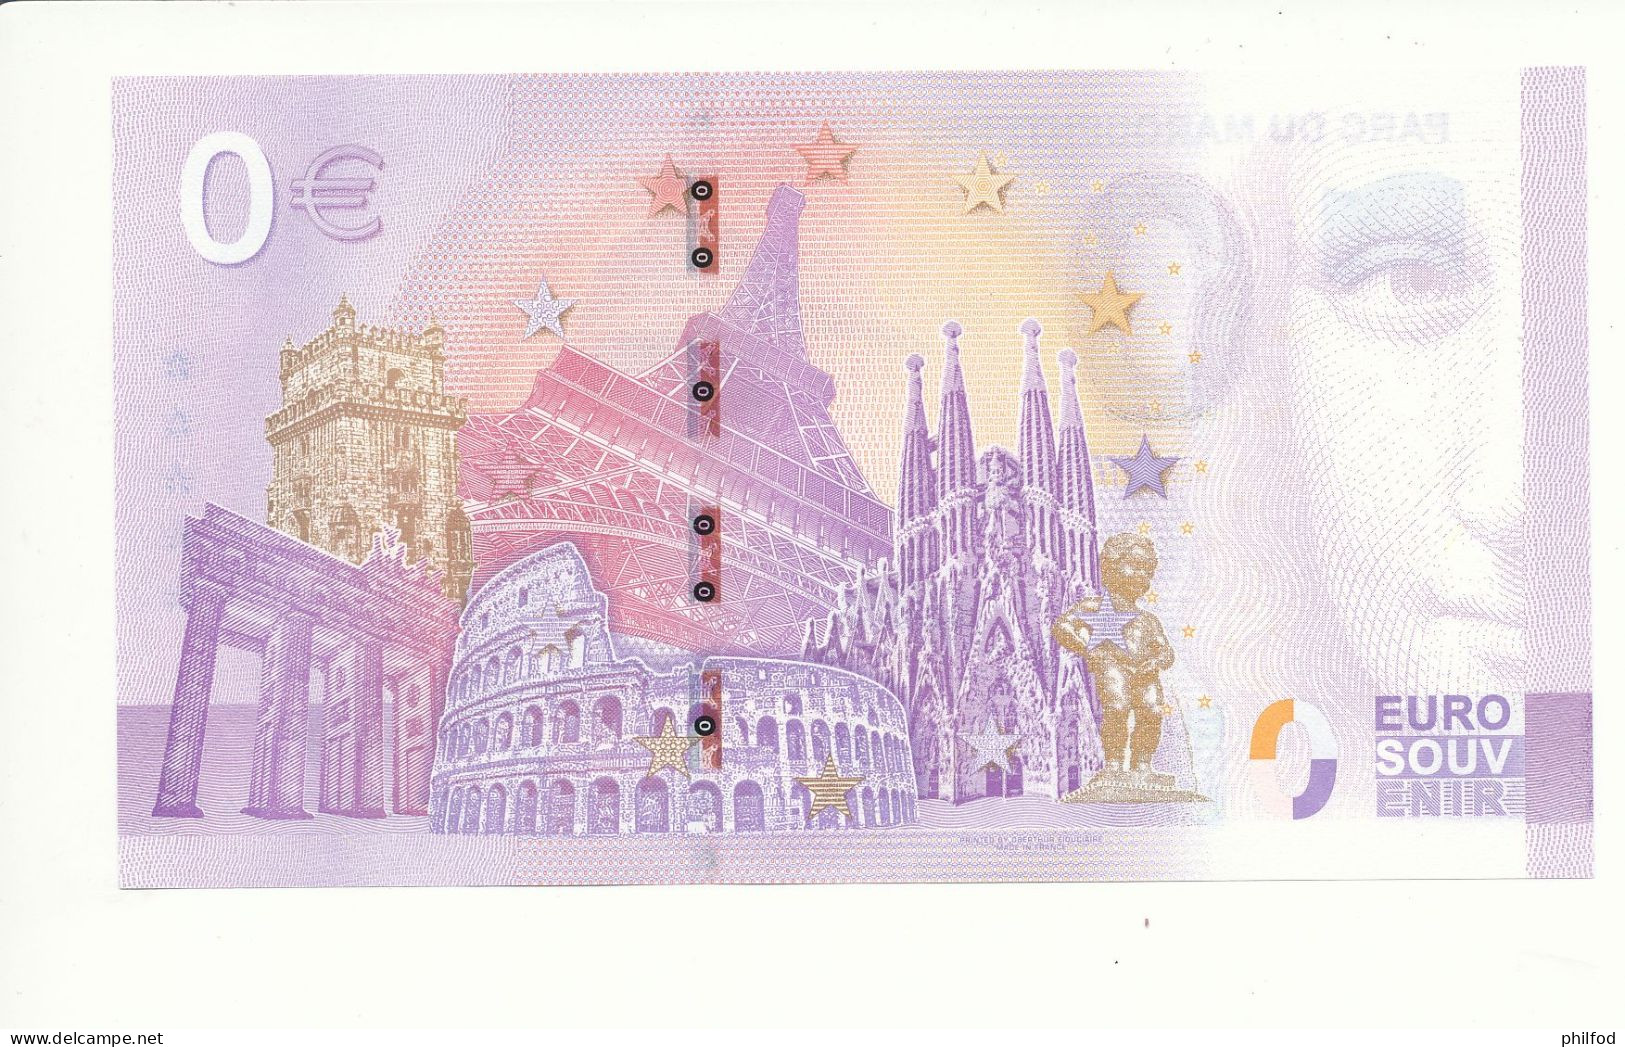 Billet Touristique 0 Euro - PARC DU MARQUENTERRE- UECB - 2022-4 - N° 1943 - Autres & Non Classés